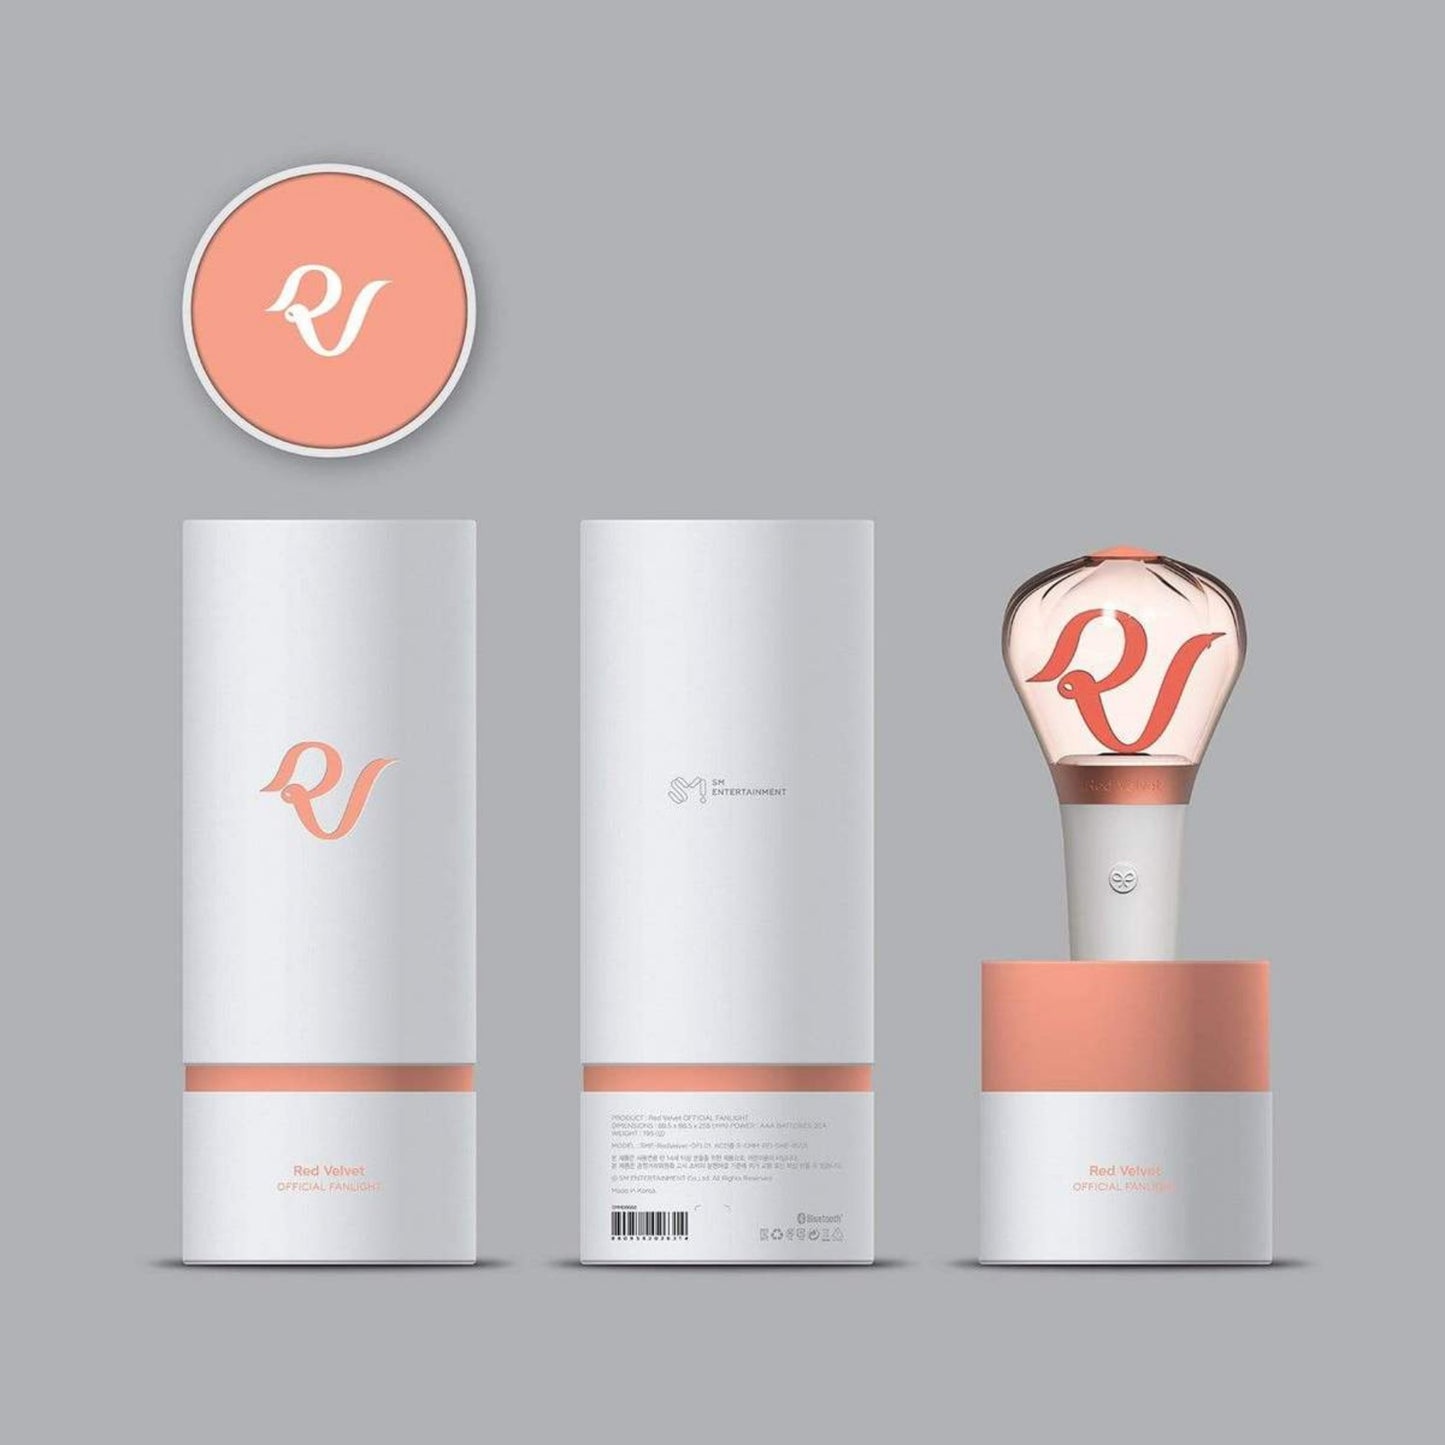  (Light Stick) Red Velvet -  Official Thunder stick العصا الرسميه الاصليه لفرقه ريدفلفد سارع بالحجز